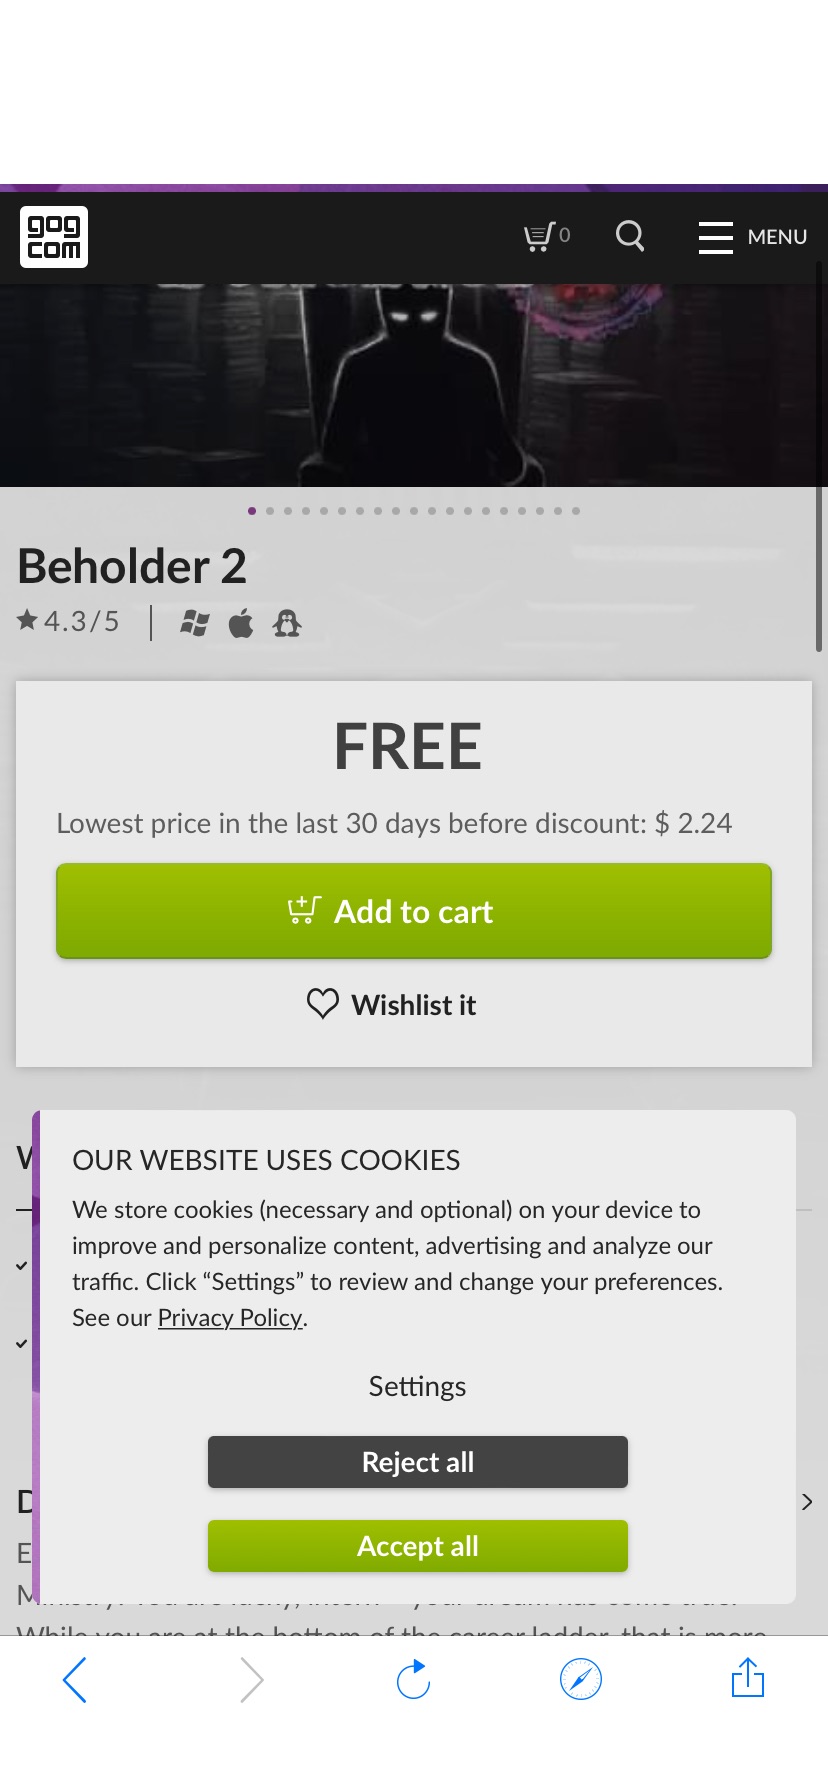 -100% Beholder 2 on GOG.com